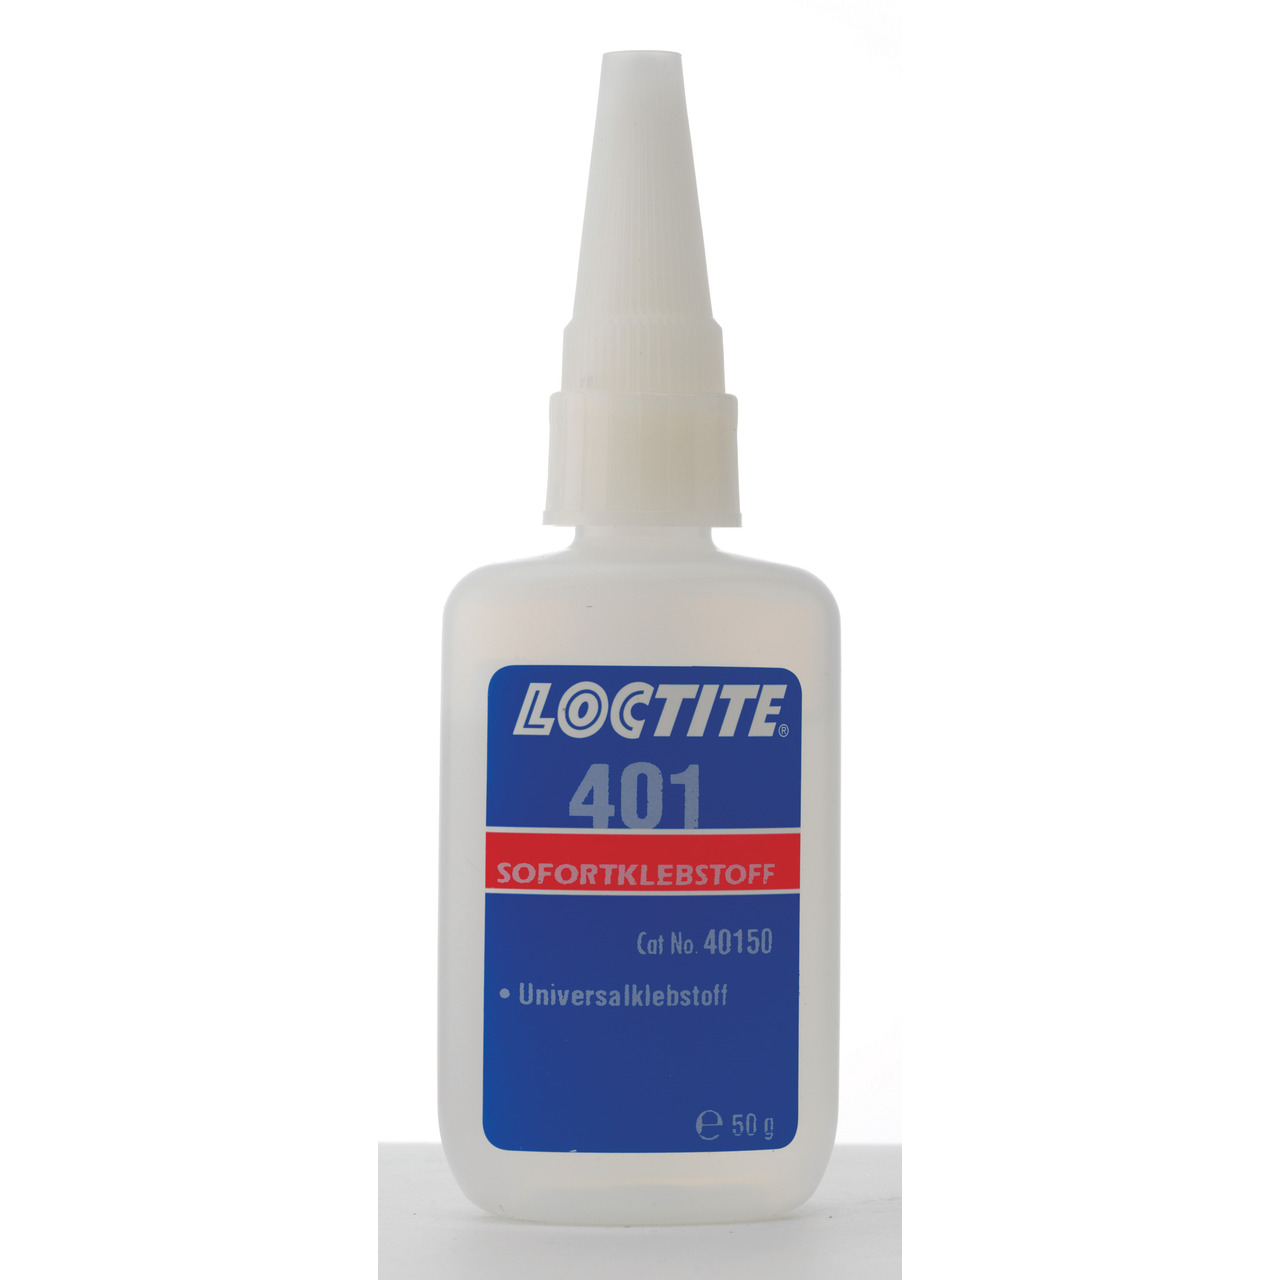 Loctite Sofortkleber 401 5g-Flasche